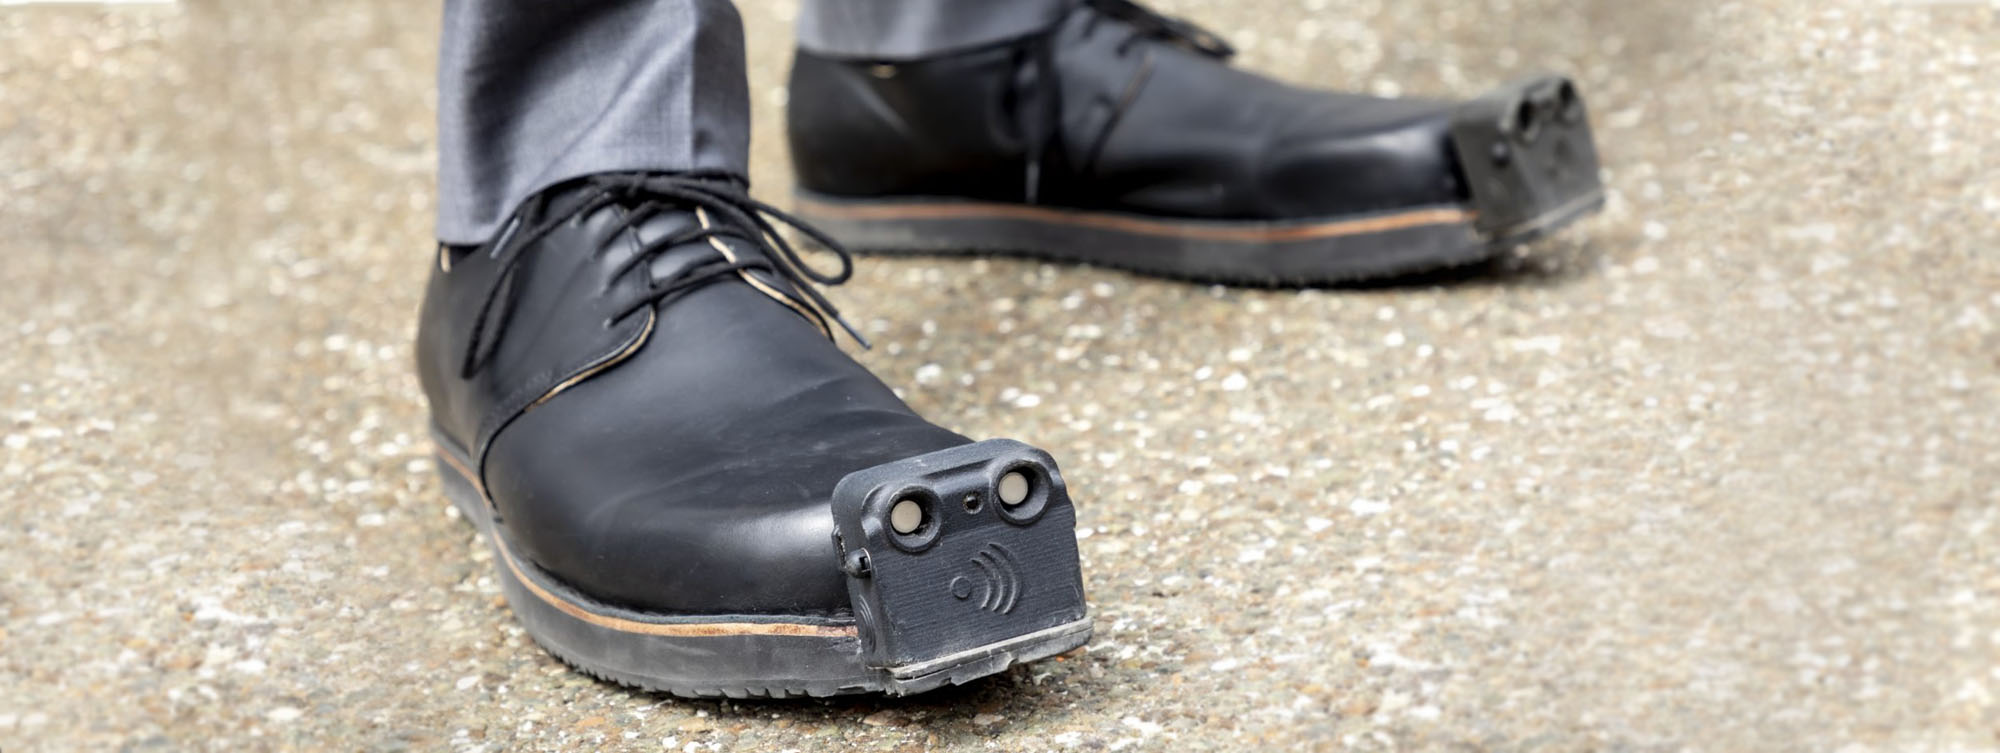 Для незрячих людей разработали умные ботинки, которые помогут передвигатьсяпо городу / «Особый взгляд» - портал для людей, которые видят по-разному